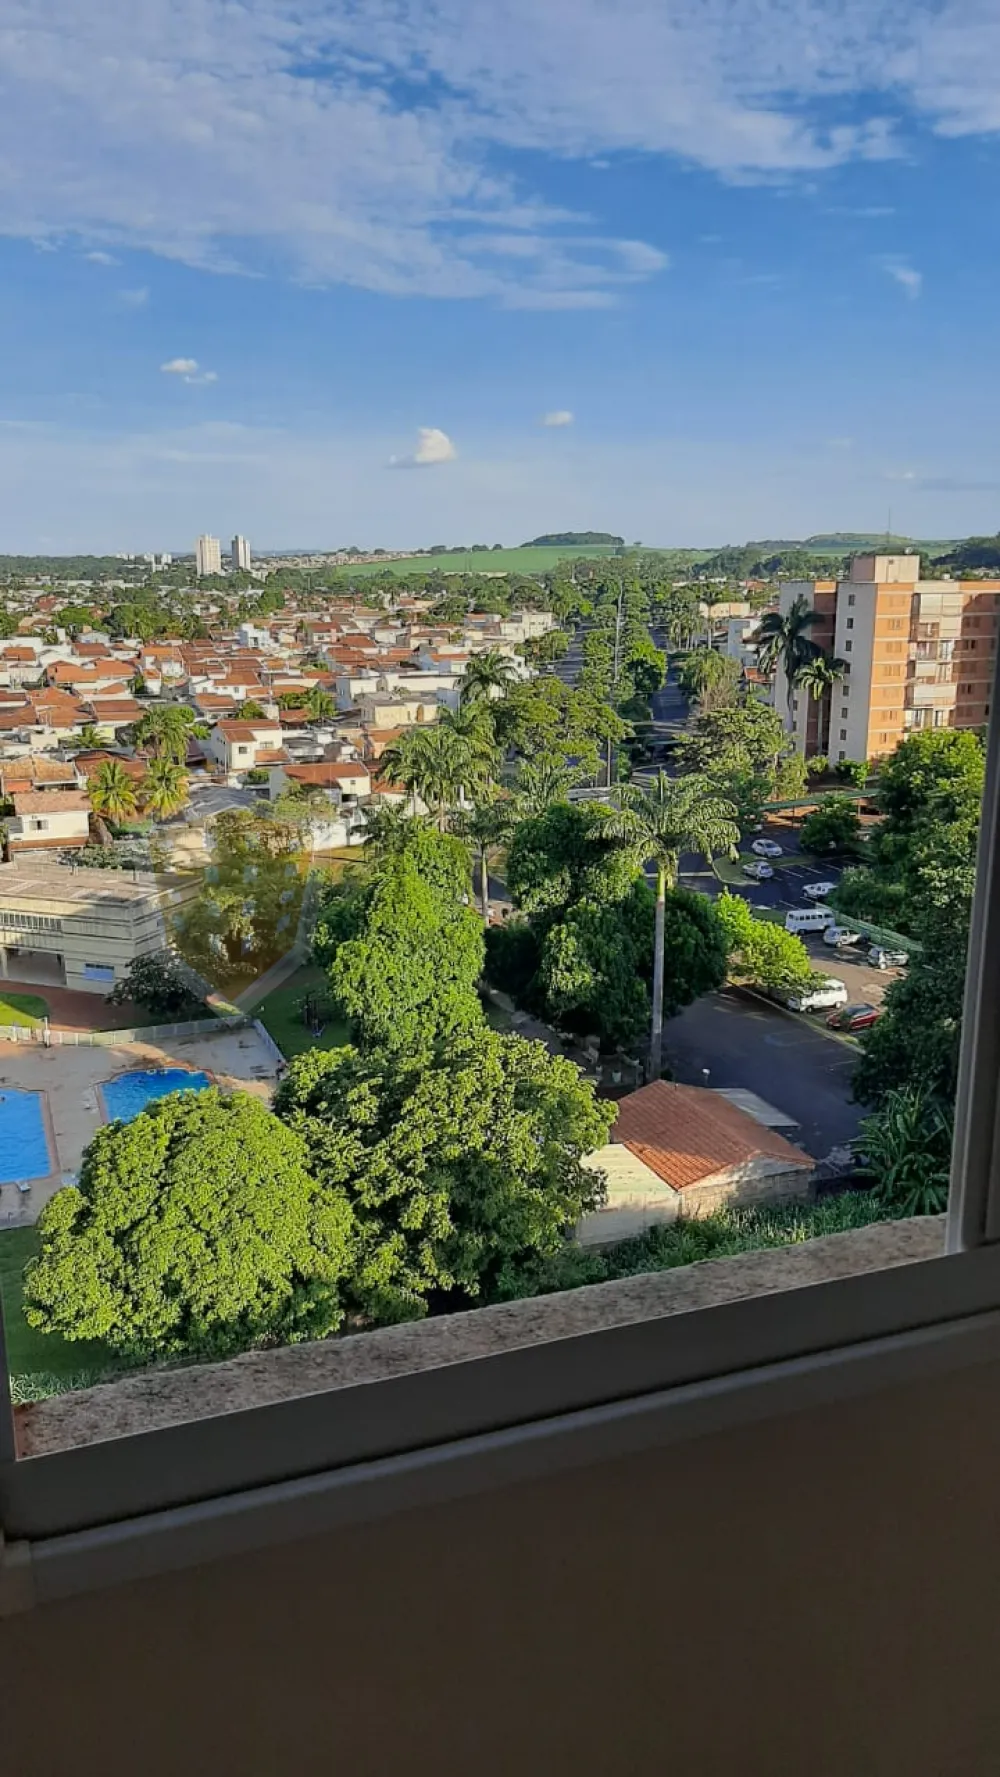 Comprar Apartamento / Padrão em Ribeirão Preto R$ 195.000,00 - Foto 10